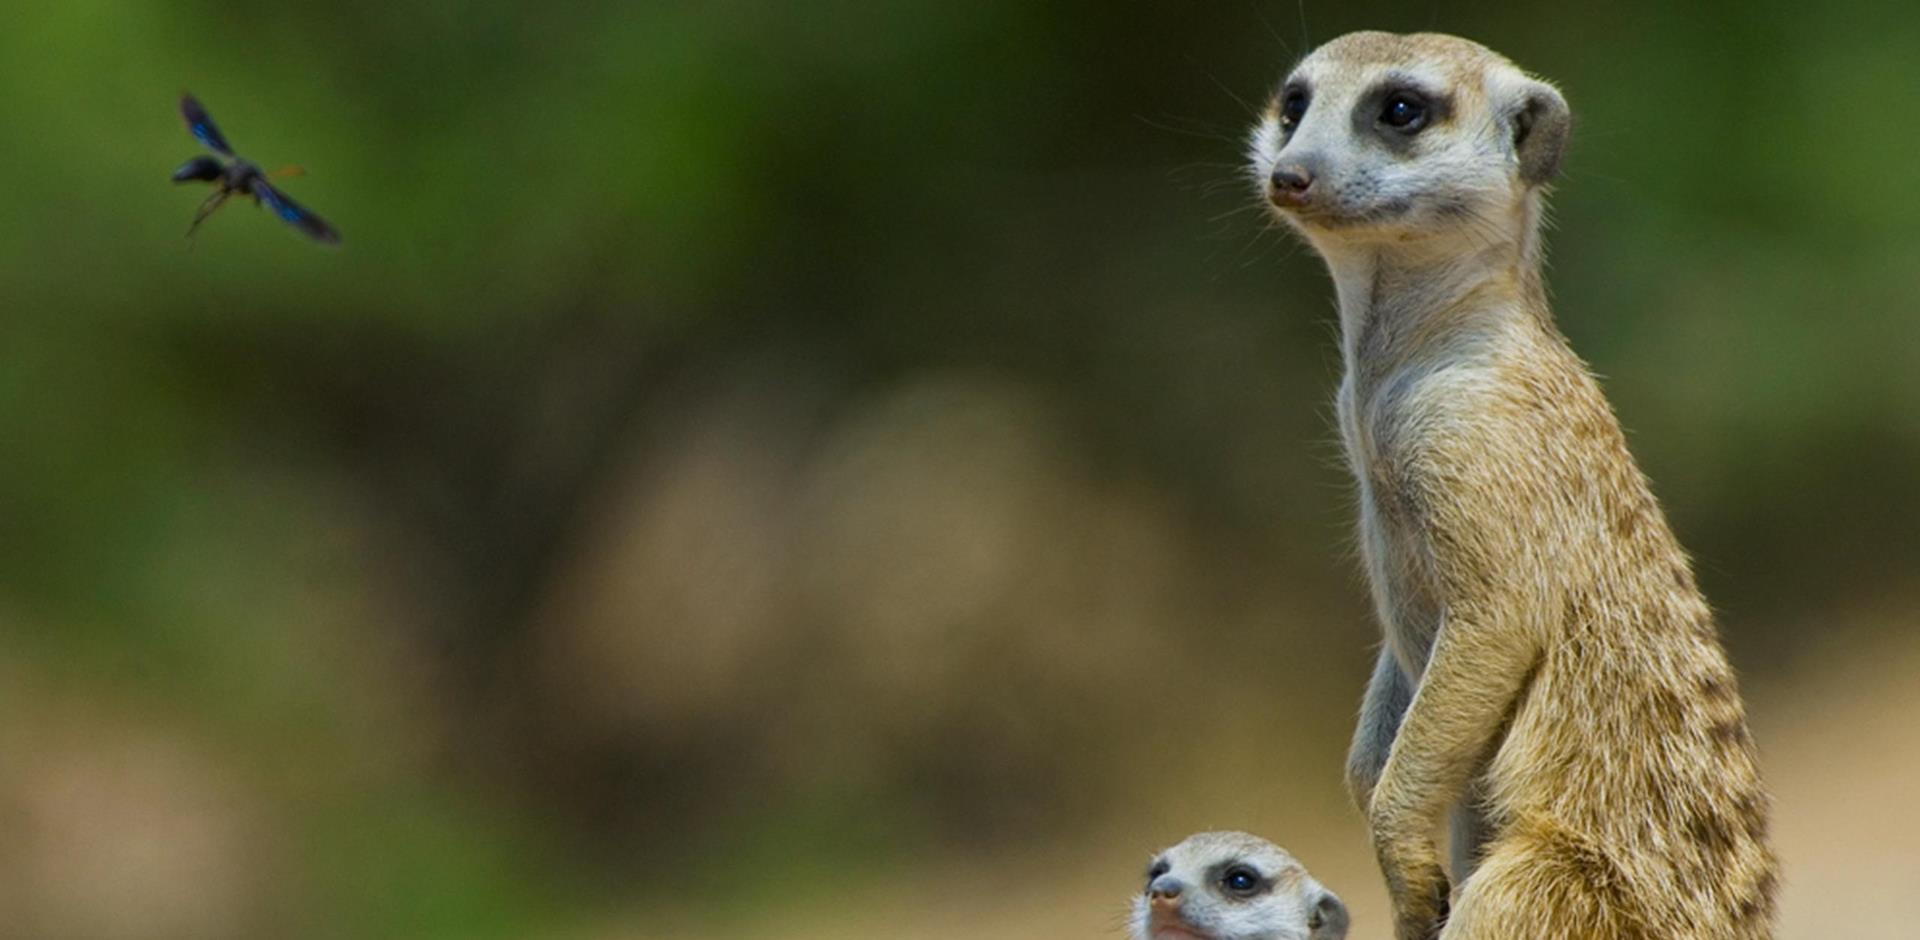 Meerkats, South Africa